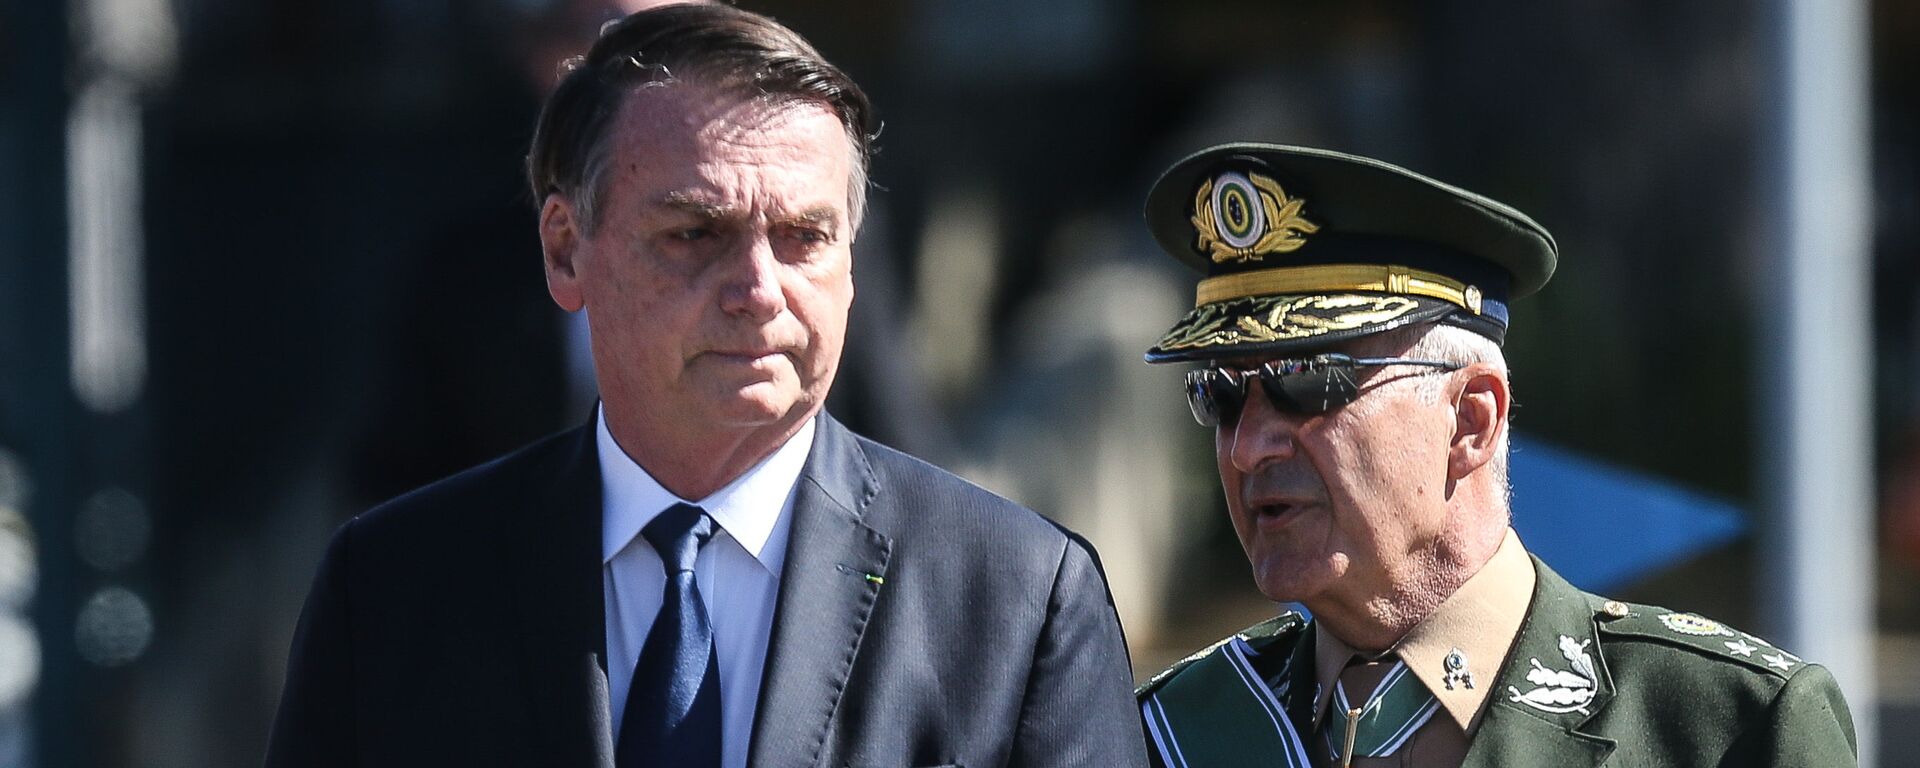  O presidente Jair Bolsonaro é acompanhado pelo general Luiz Eduardo Ramos durante solenidade comemorativa do Dia do Exército na sede do Comando Militar do Sudeste, na zona sul de São Paulo, em 2019. - Sputnik Brasil, 1920, 05.09.2020